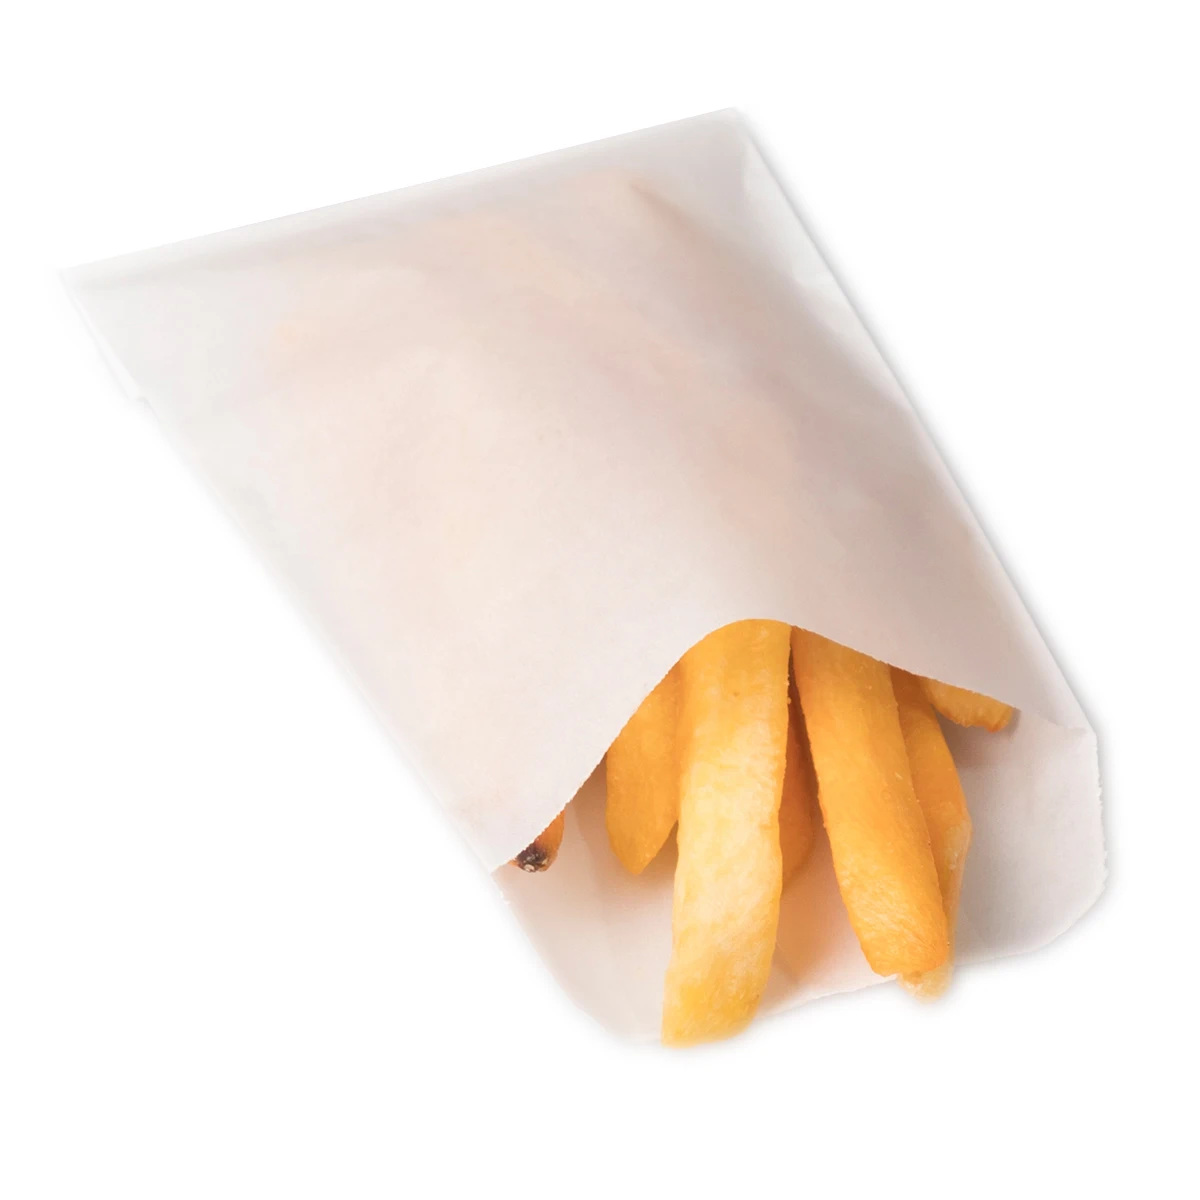 packaging fries bag